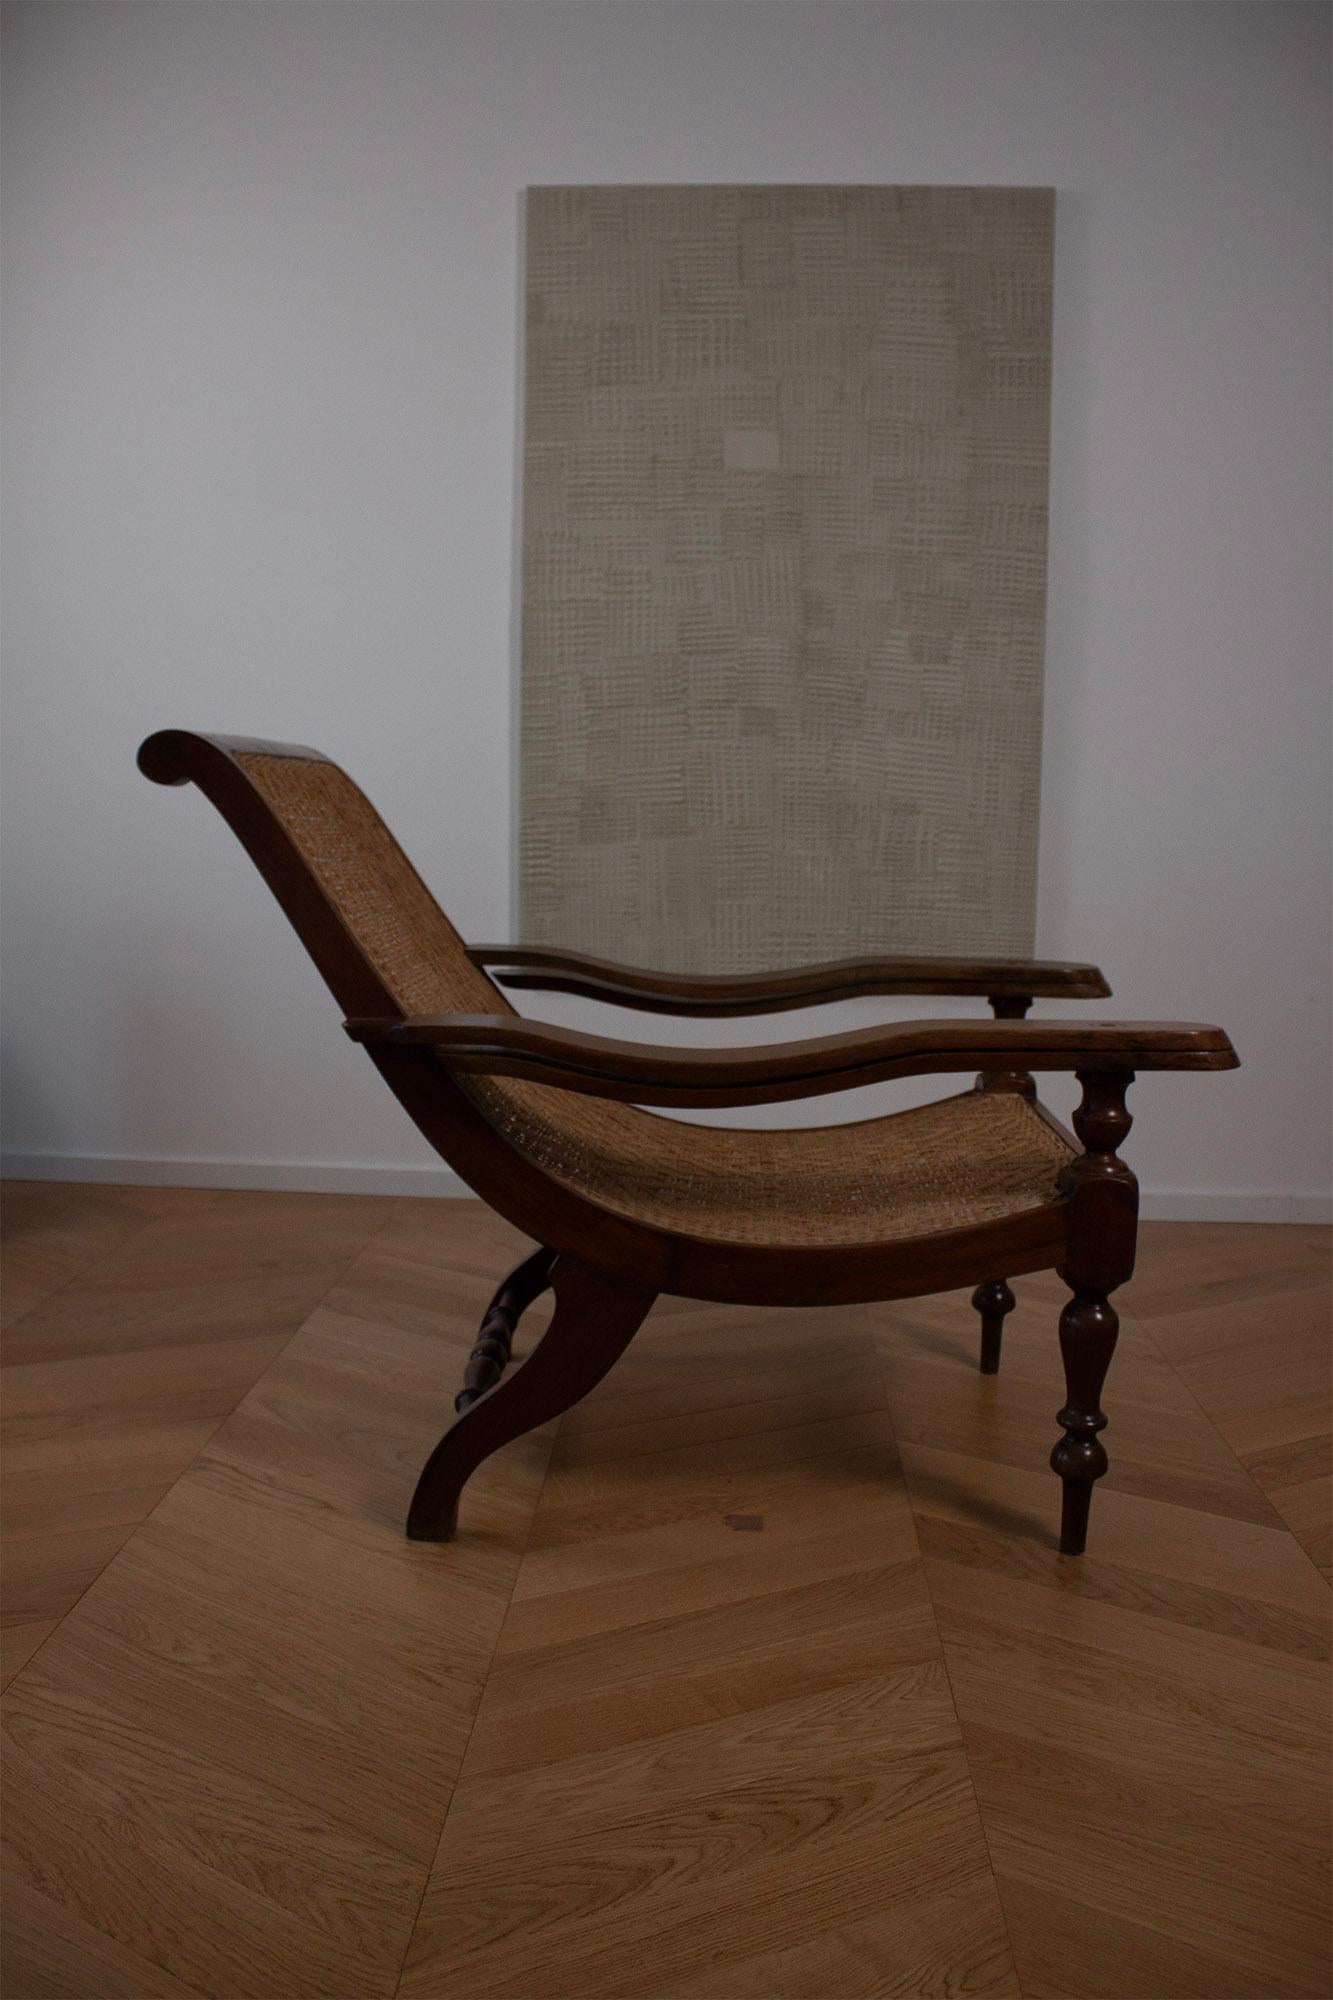 Colonial britannique Antique Coloni Plantation Woven Lounge Chair Curved Paddle Armrest (accoudoir à palette incurvée)